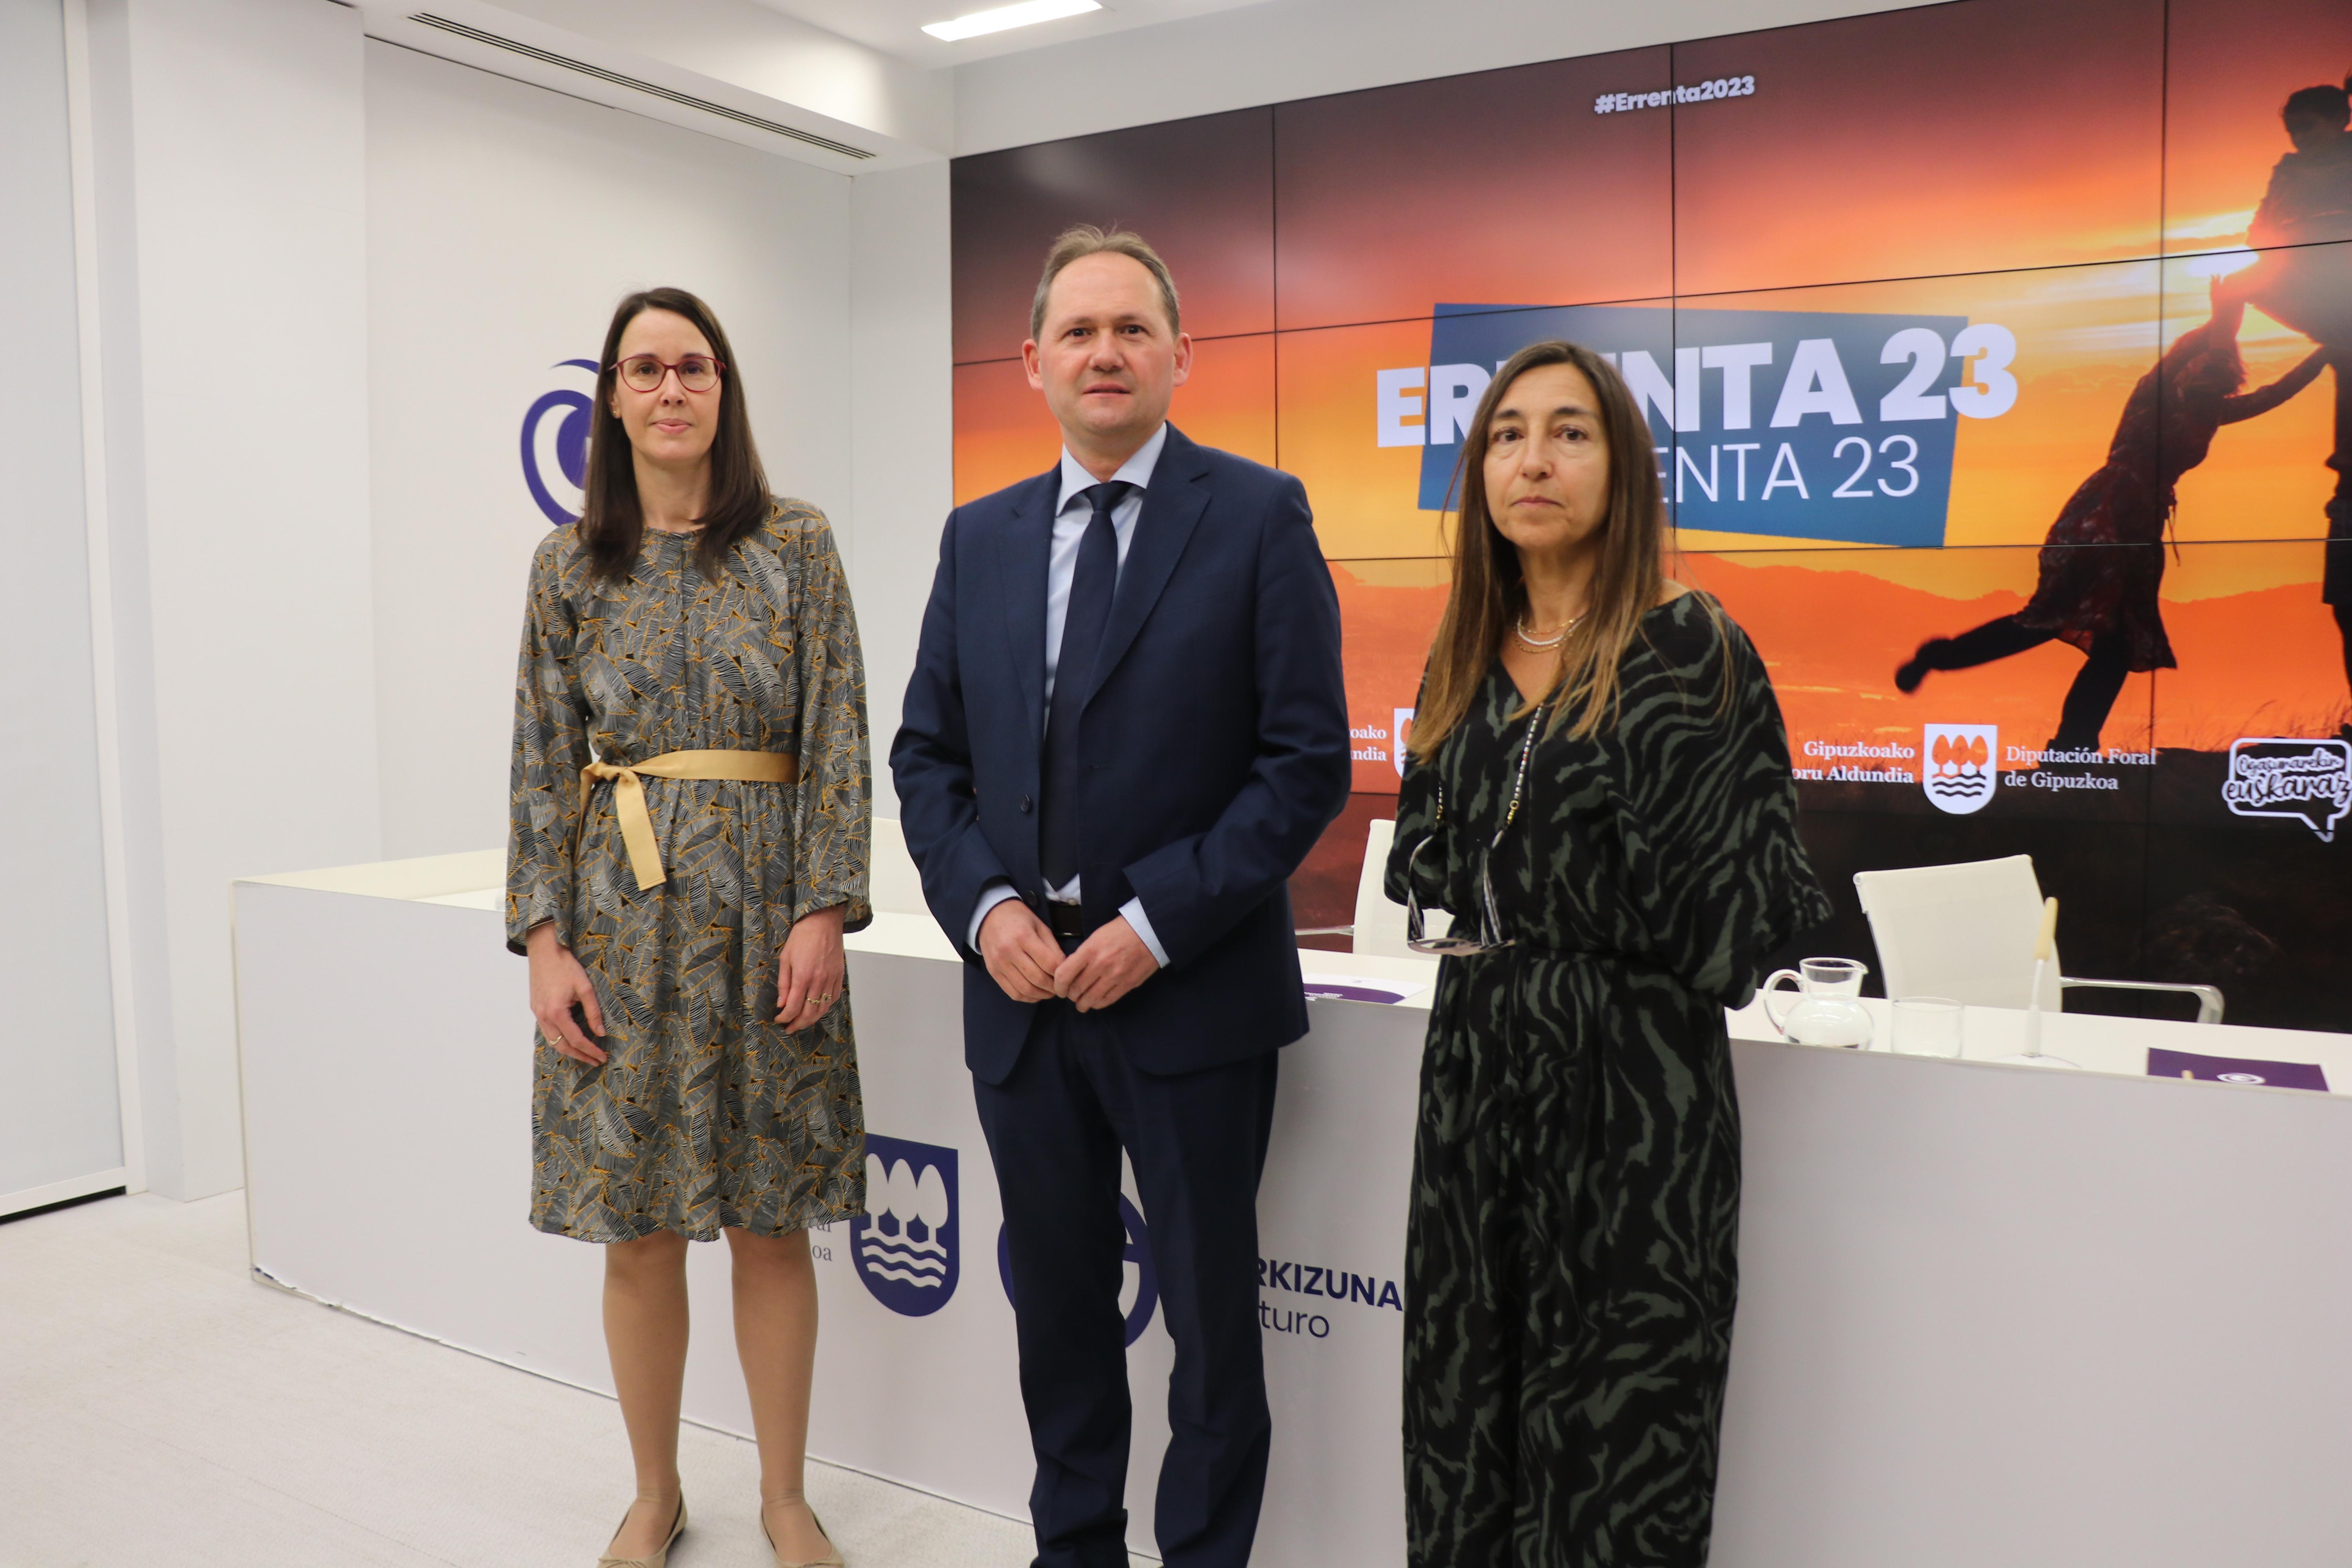 La campaña de la Renta 2023 de Gipuzkoa tendrá un saldo de 52,8 millones de euros a favor de los contribuyentes